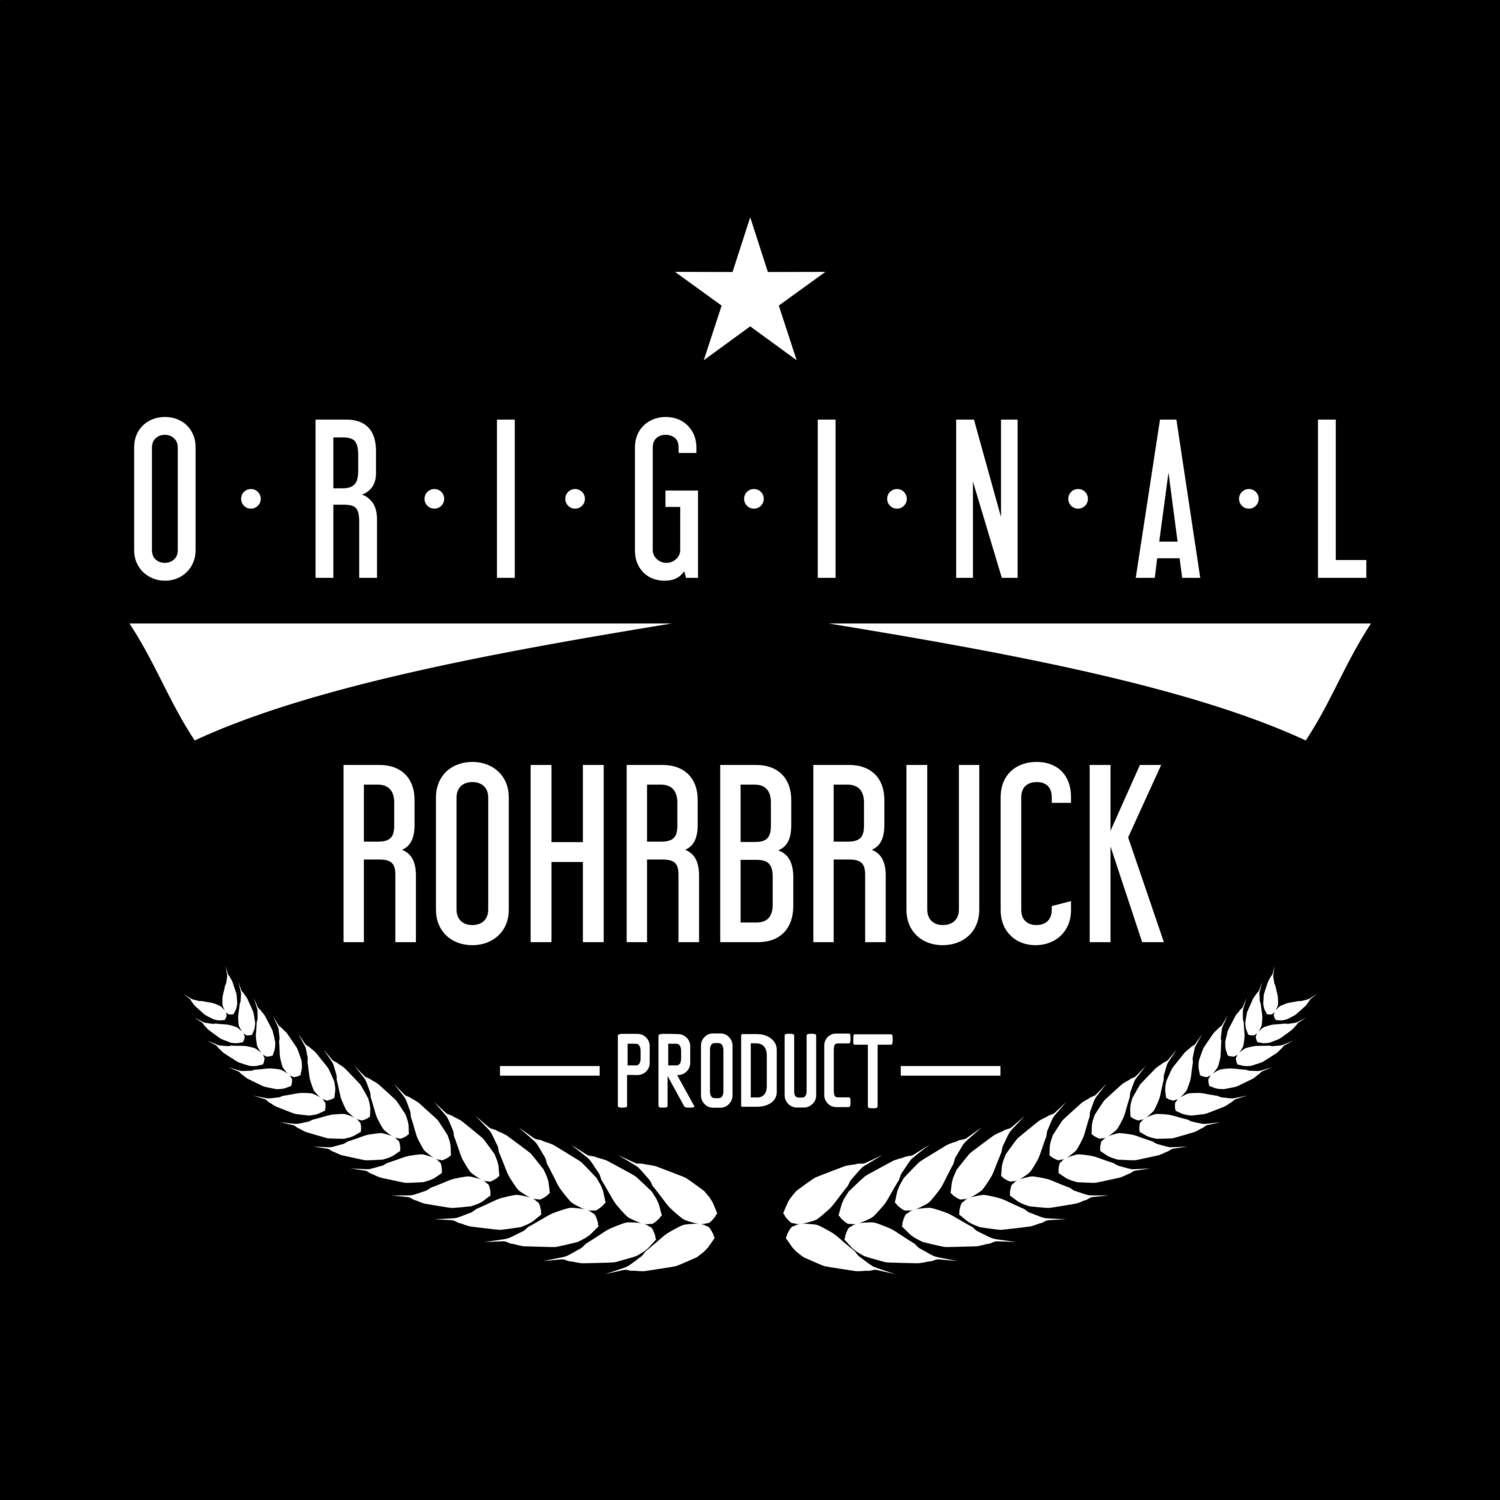 Rohrbruck T-Shirt »Original Product«